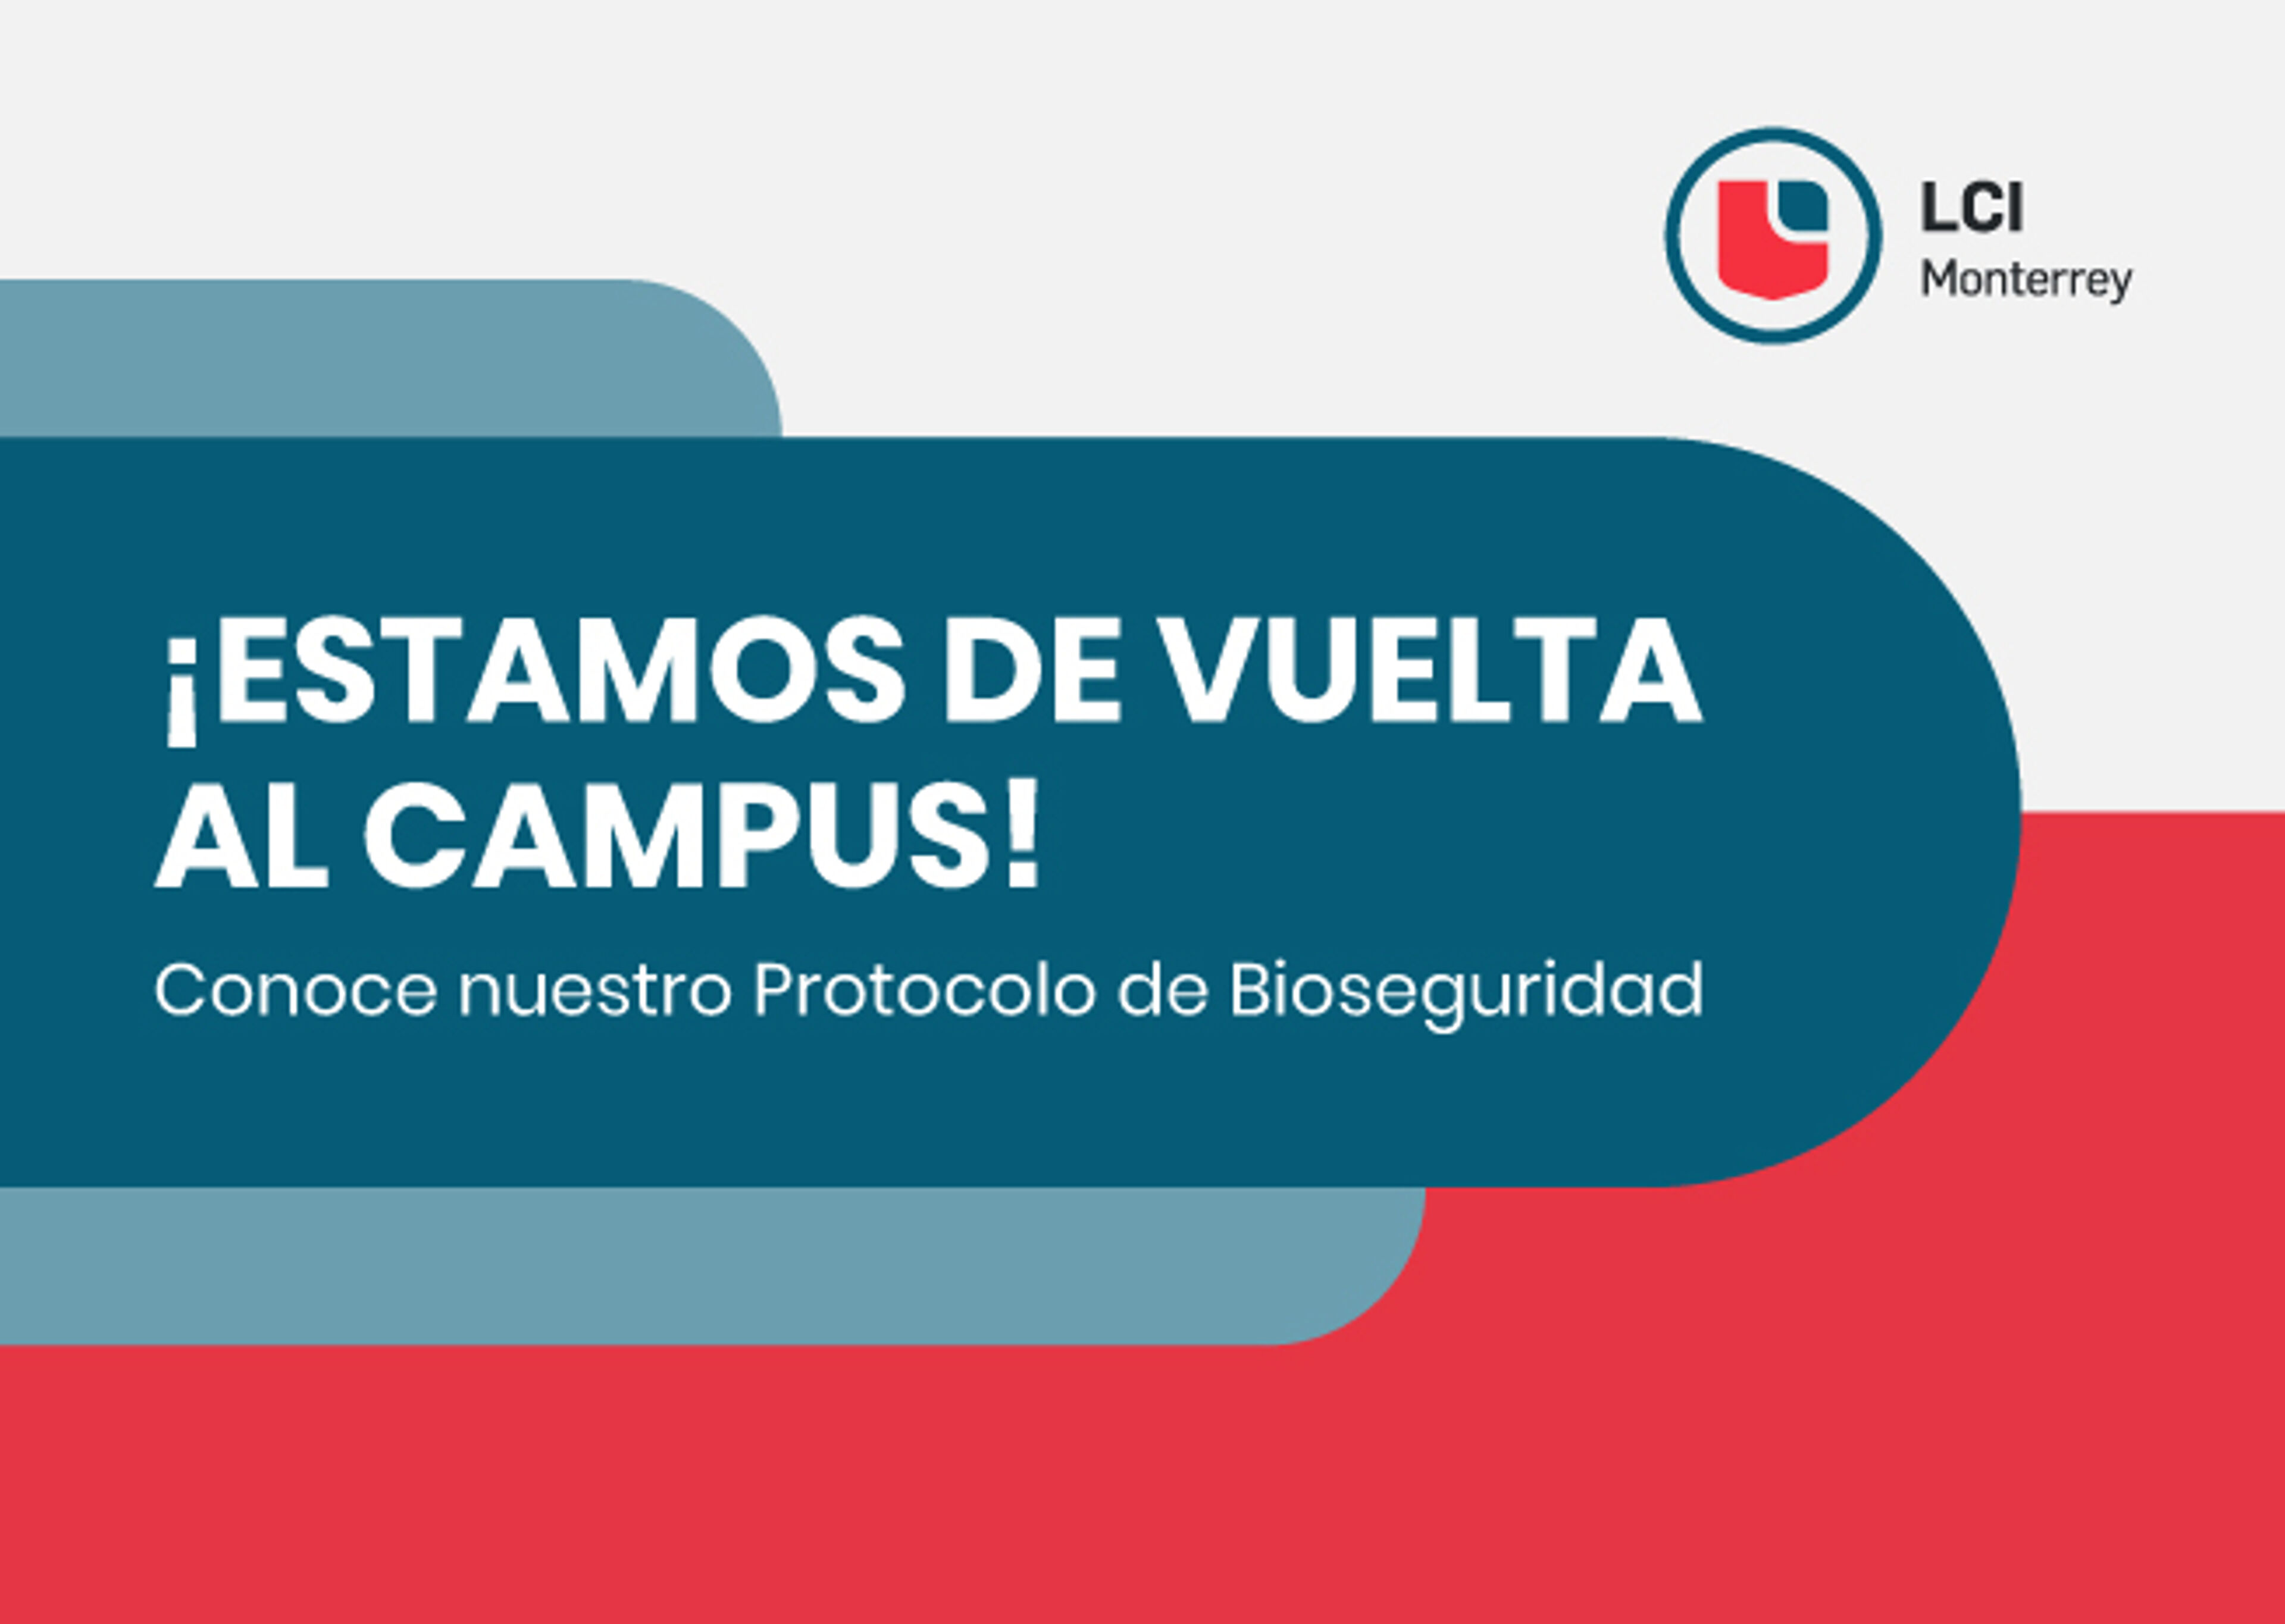 Un anuncio vibrante que dice "¡Estamos de vuelta en el campus!" invitando a conocer el Protocolo de Bioseguridad de LCI Monterrey.